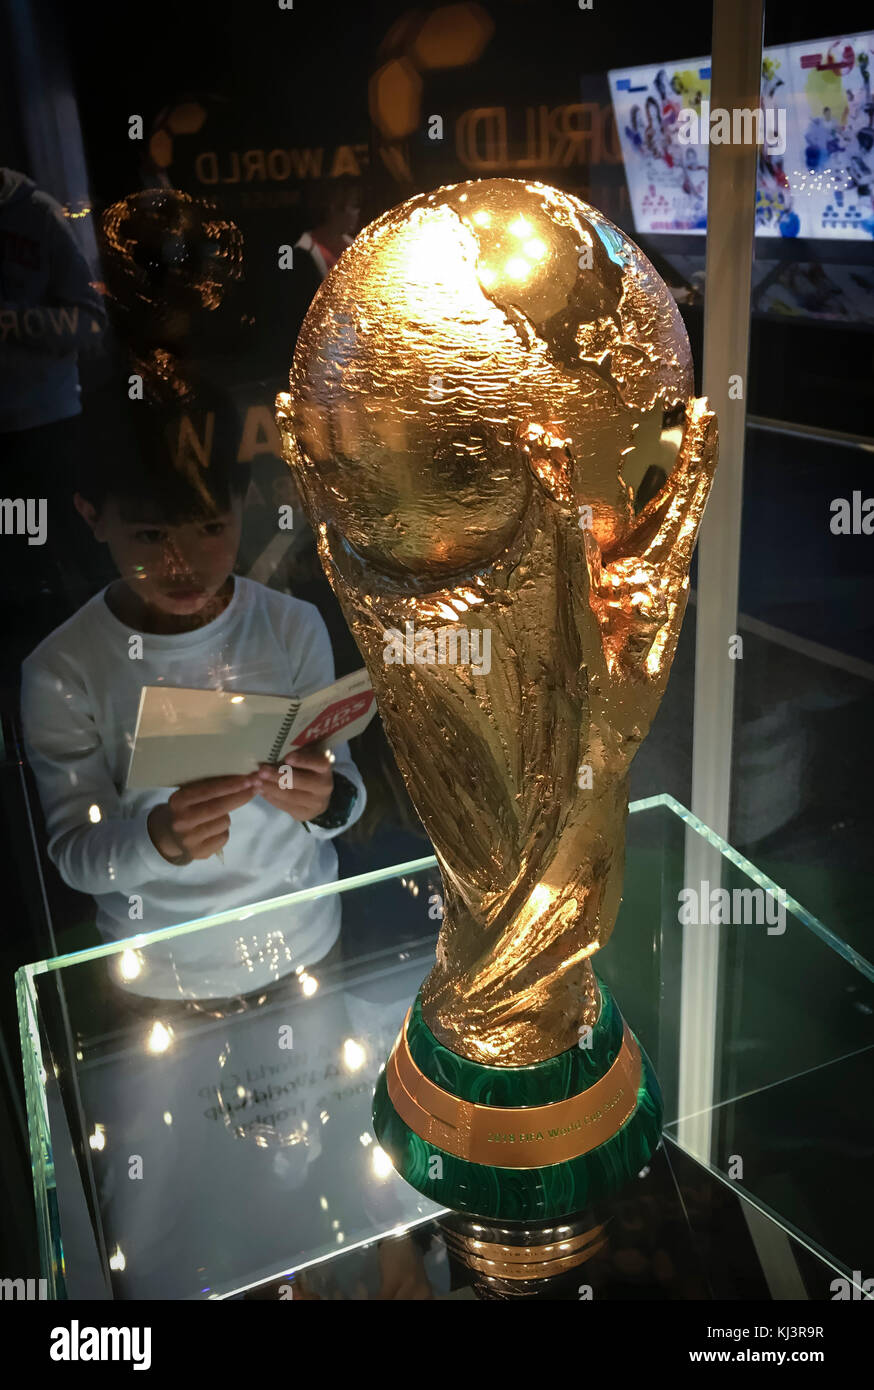 Zürich, Schweiz-12 Nov 2017: Ein kleiner Junge beobachtet die FIFA WM-Pokal  auf der FIFA Fußball-Museum in Zürich, Schweiz ausgestellt Stockfotografie  - Alamy